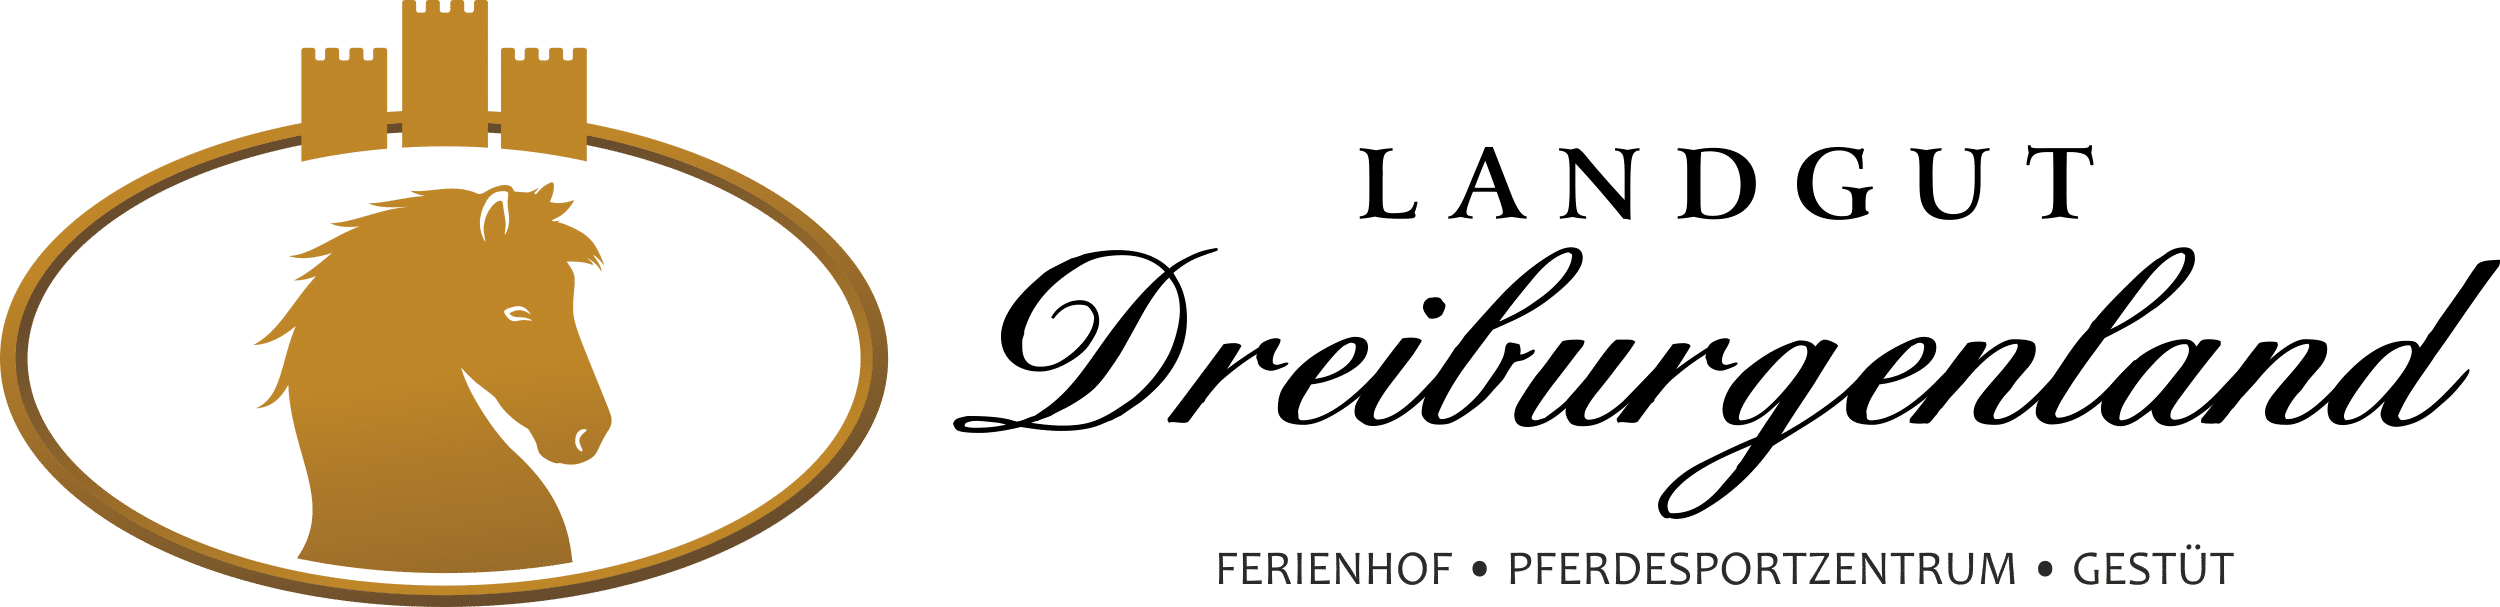 Landgut Dreiburgenland | Impressum - Landgut-Dreiburgenland